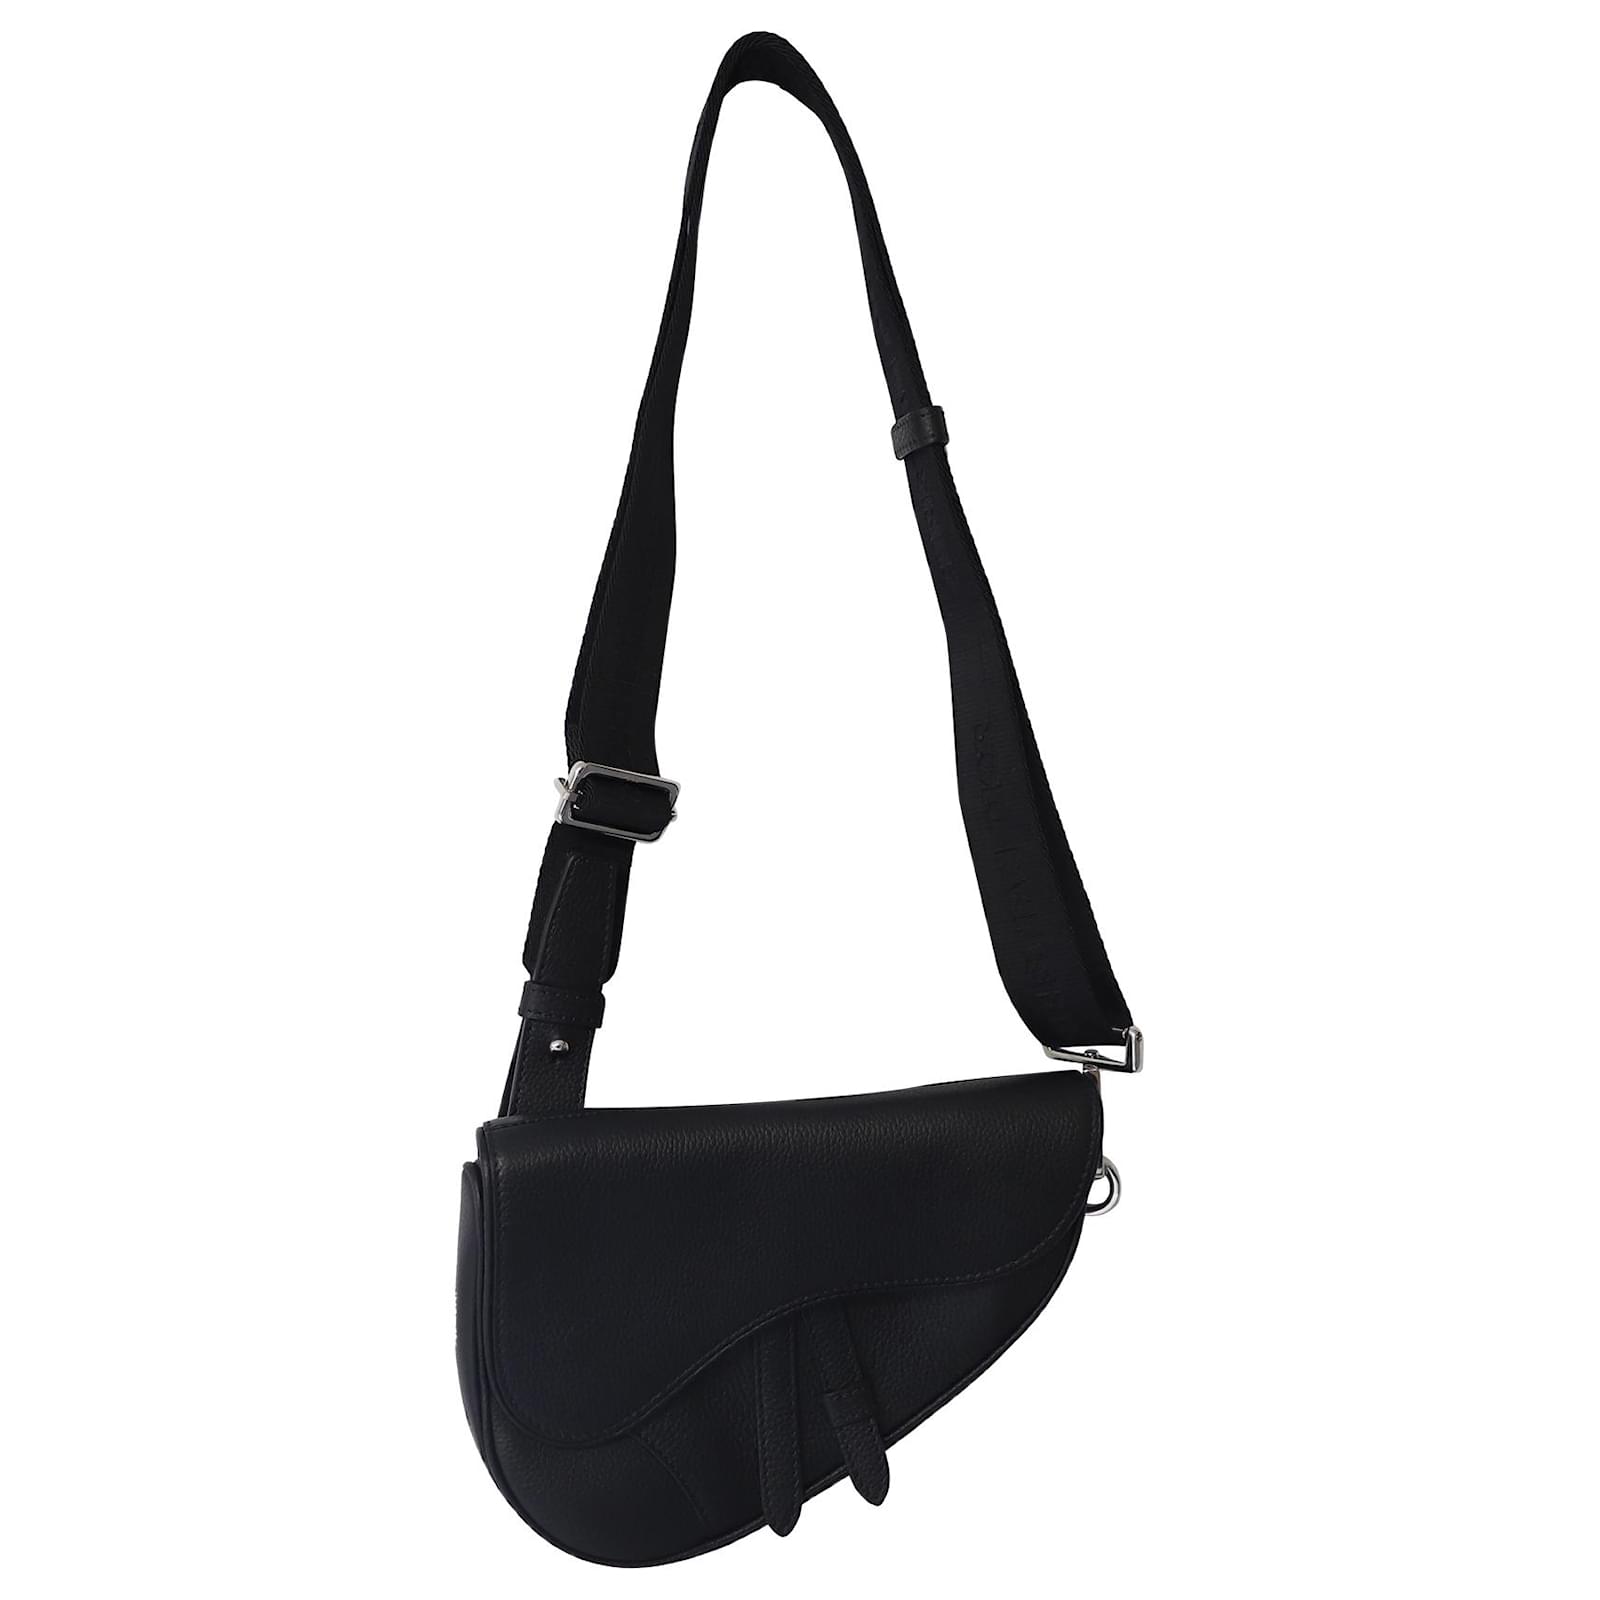 Dior Saddle Shoulder Bag in Black Grained Leather